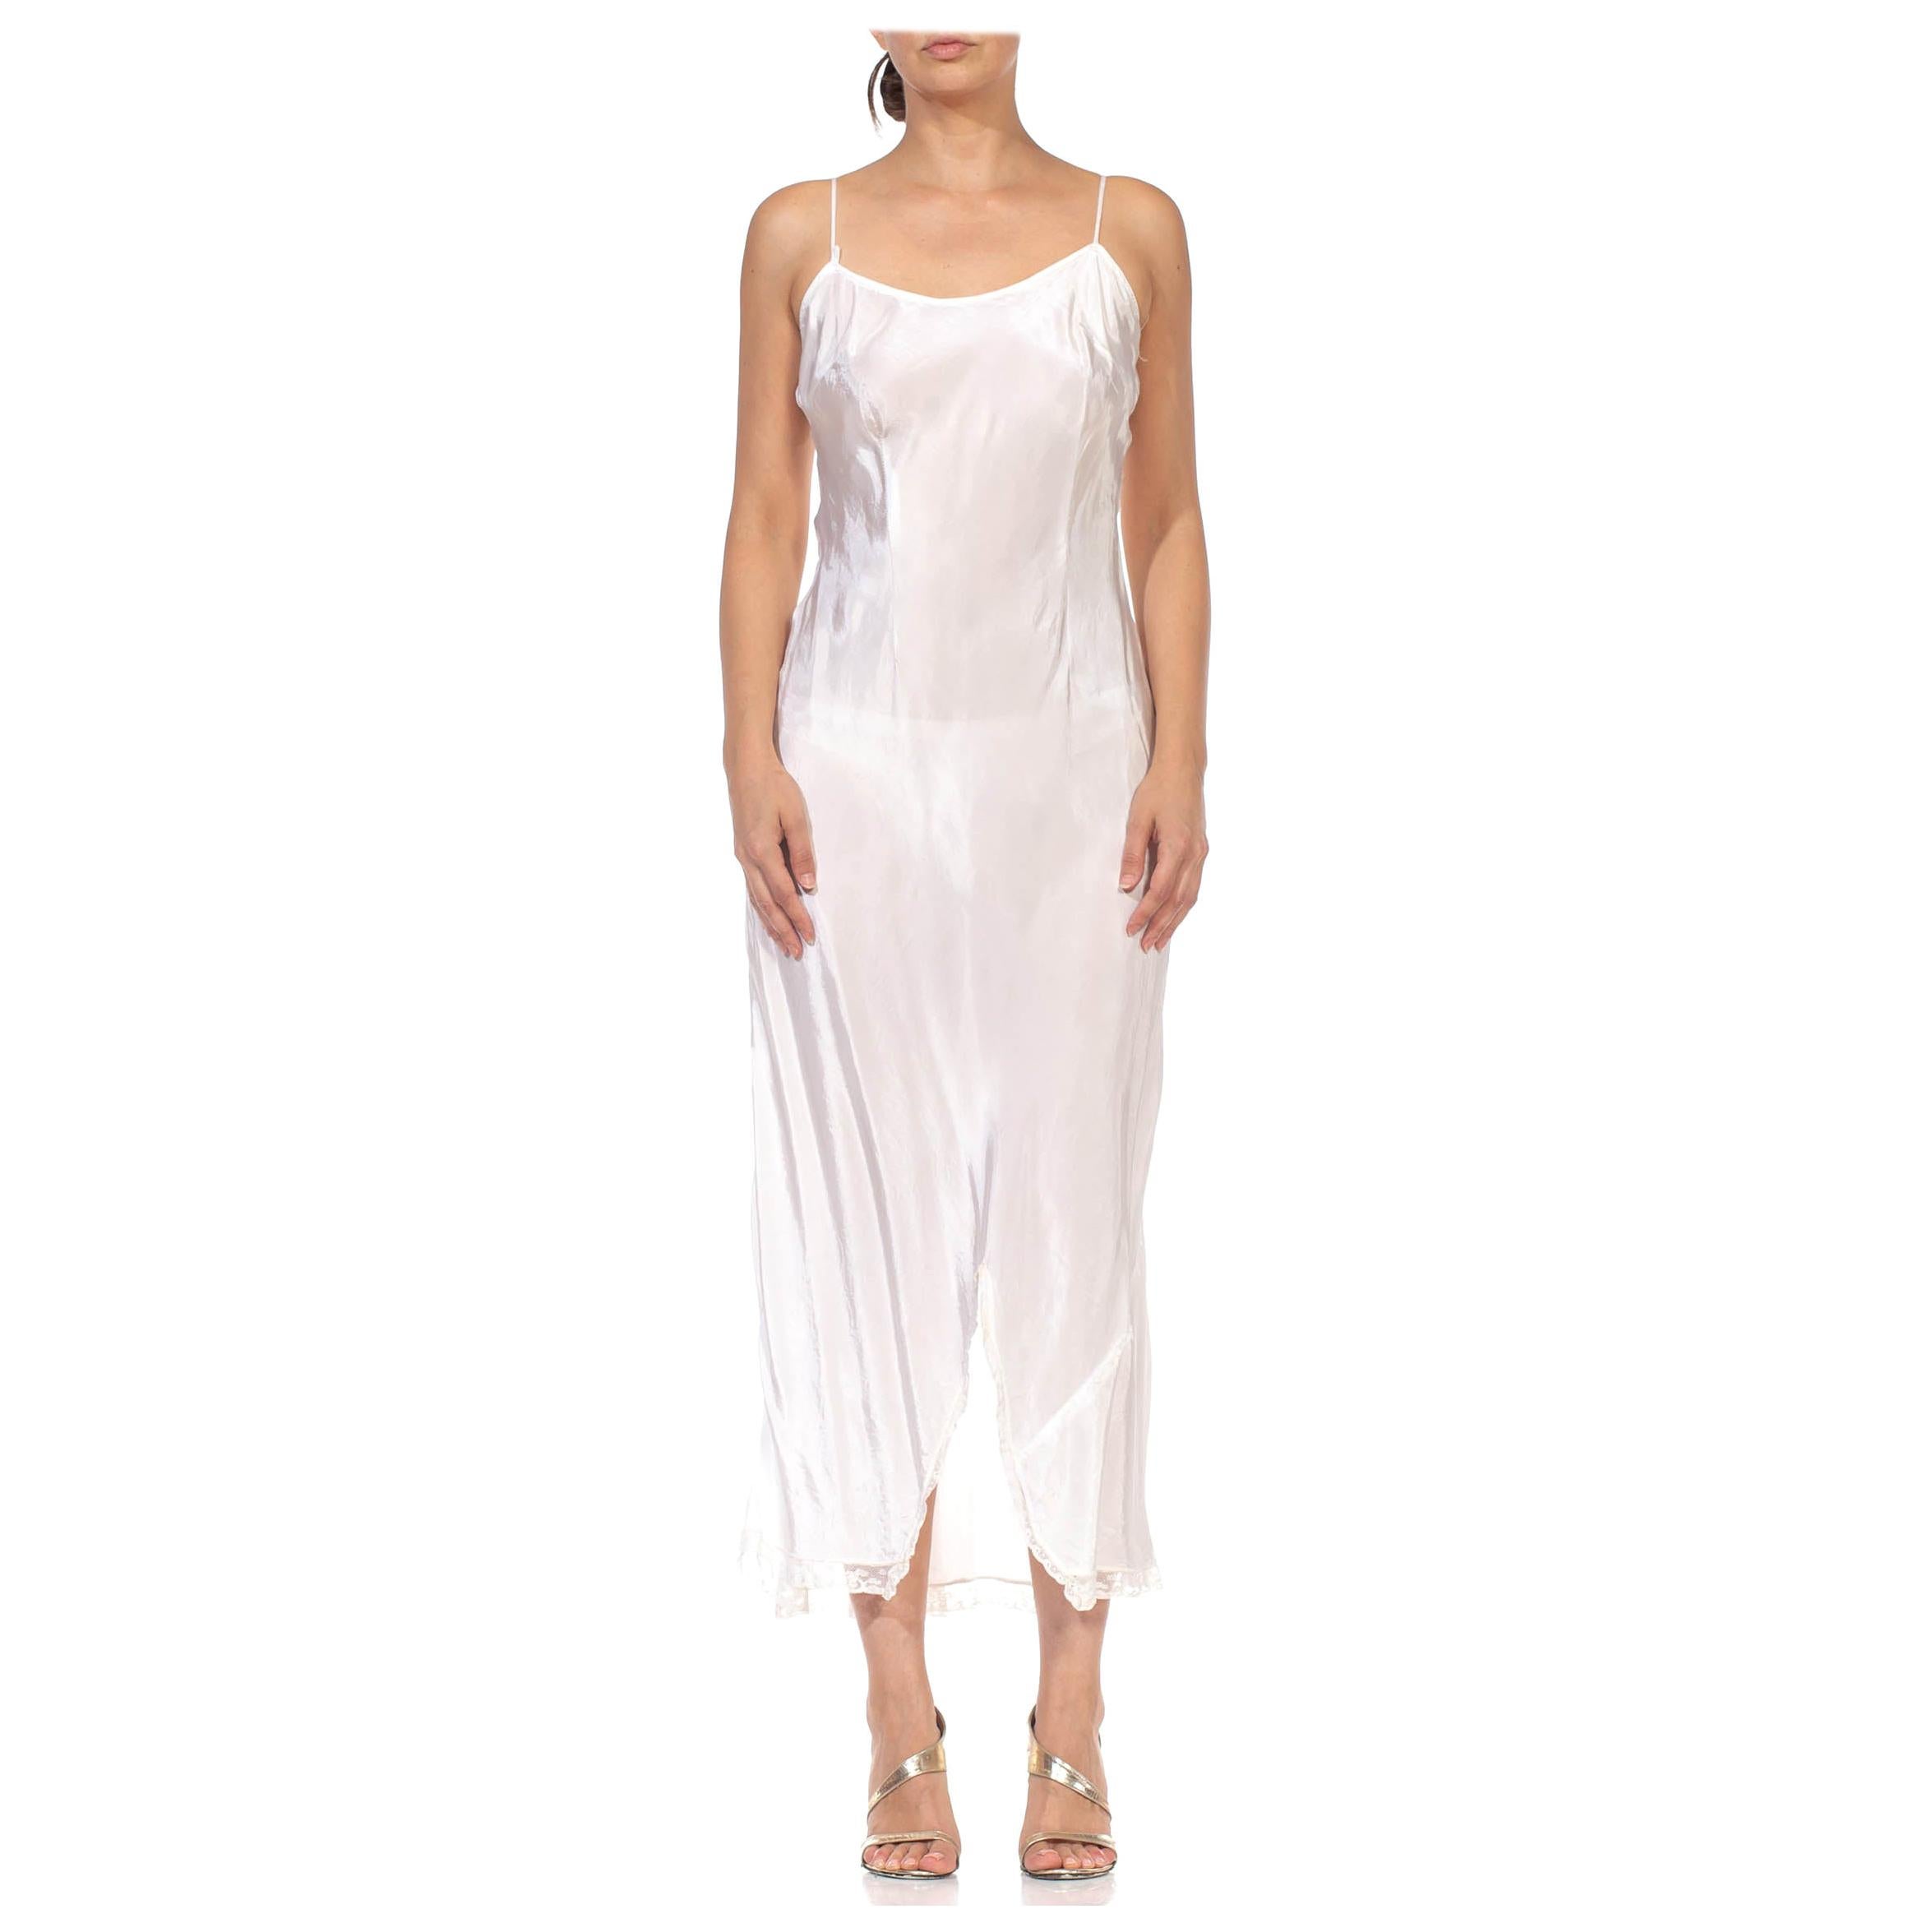 1930S White Bias Cut Rayon Slip Dress For Sale